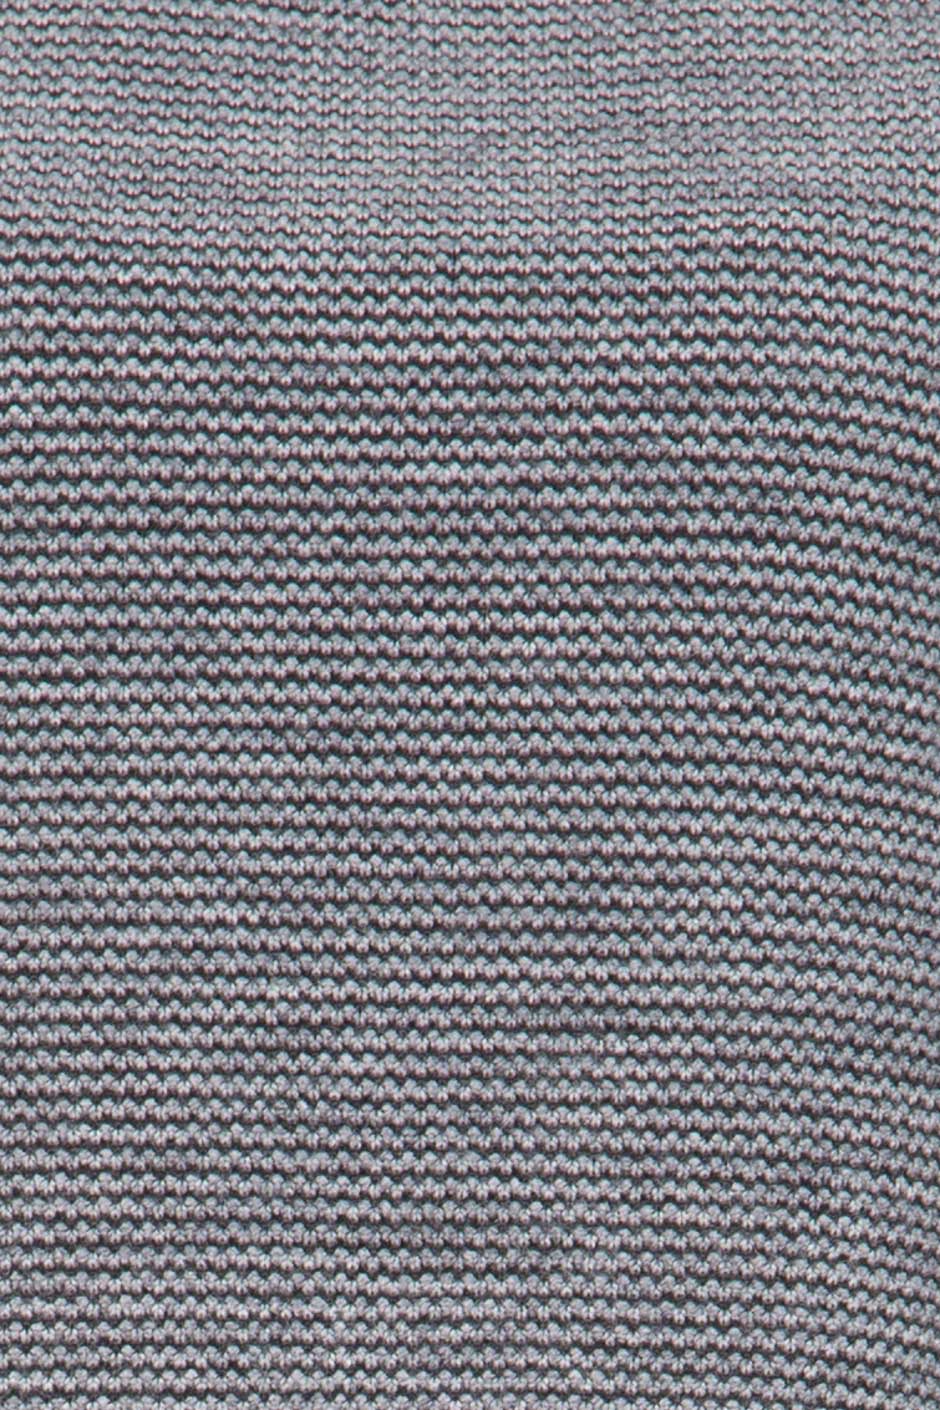 Sixth June - T-shirt crop Femme rayures gris noir 1044V